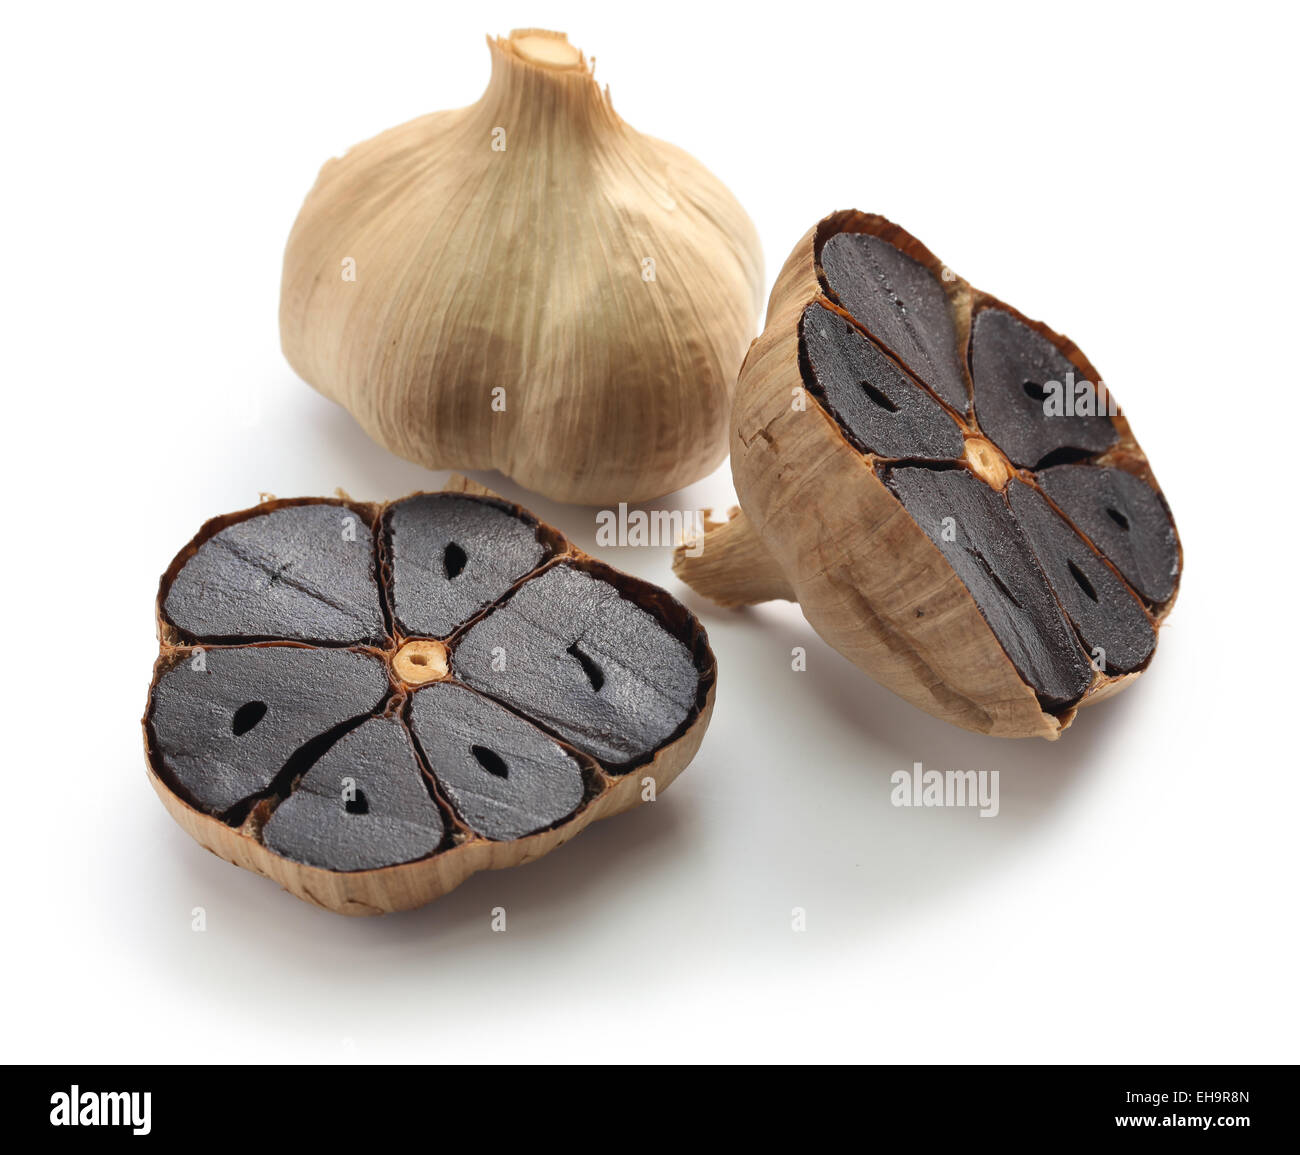 Nero bulbi di aglio e chiodi di garofano su sfondo bianco Foto Stock